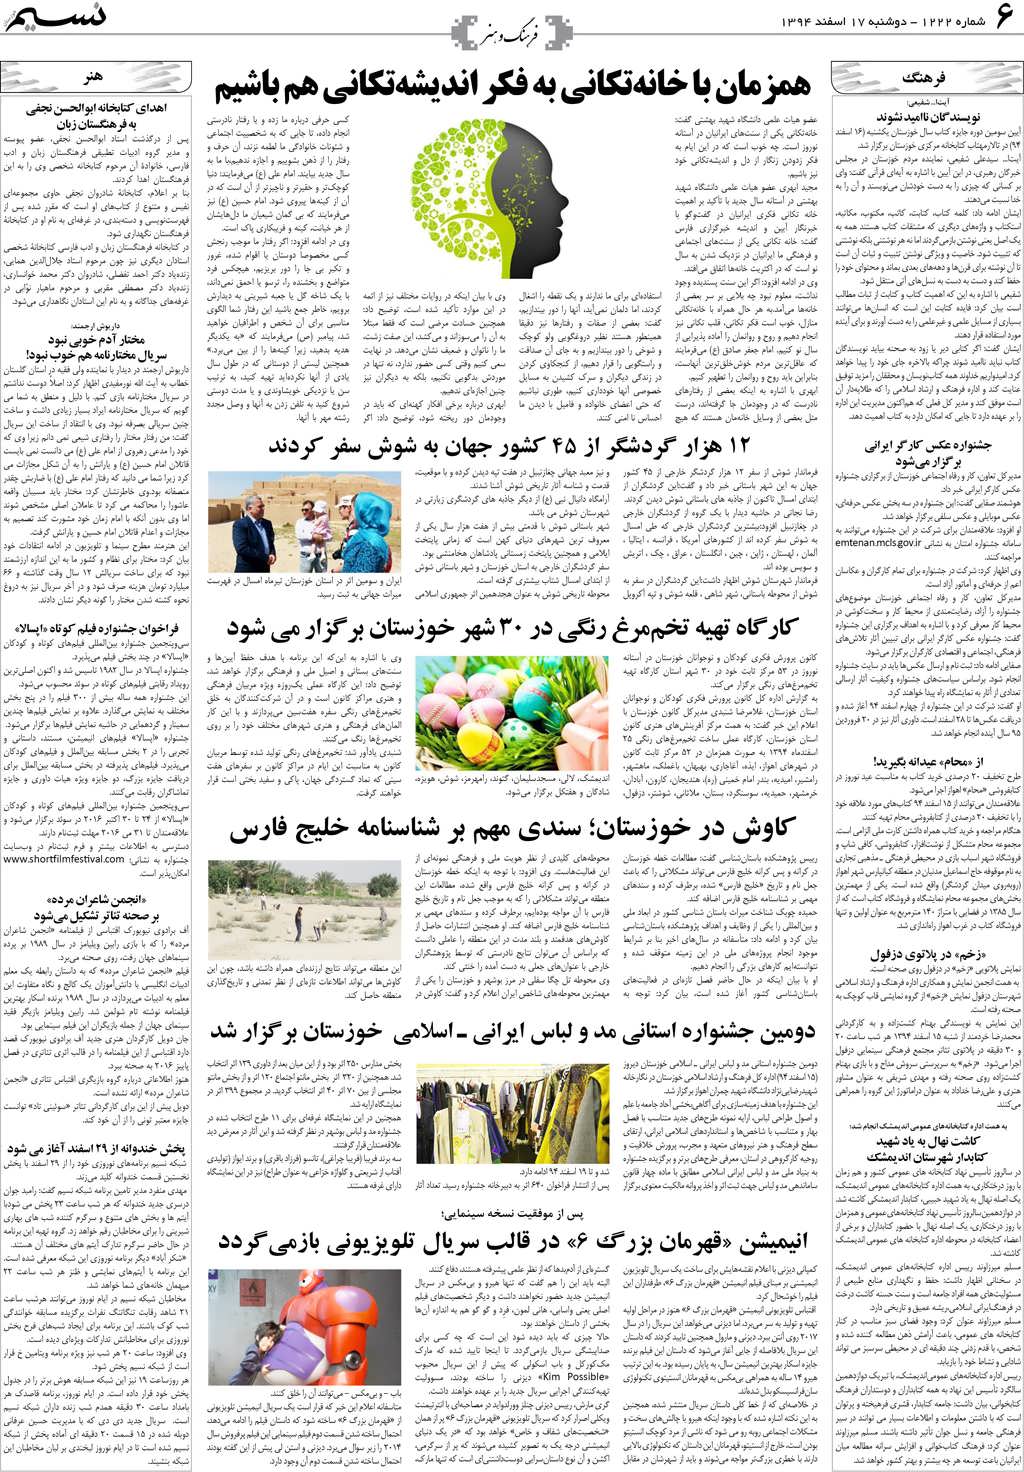 صفحه فرهنگ و هنر روزنامه نسیم شماره 1222